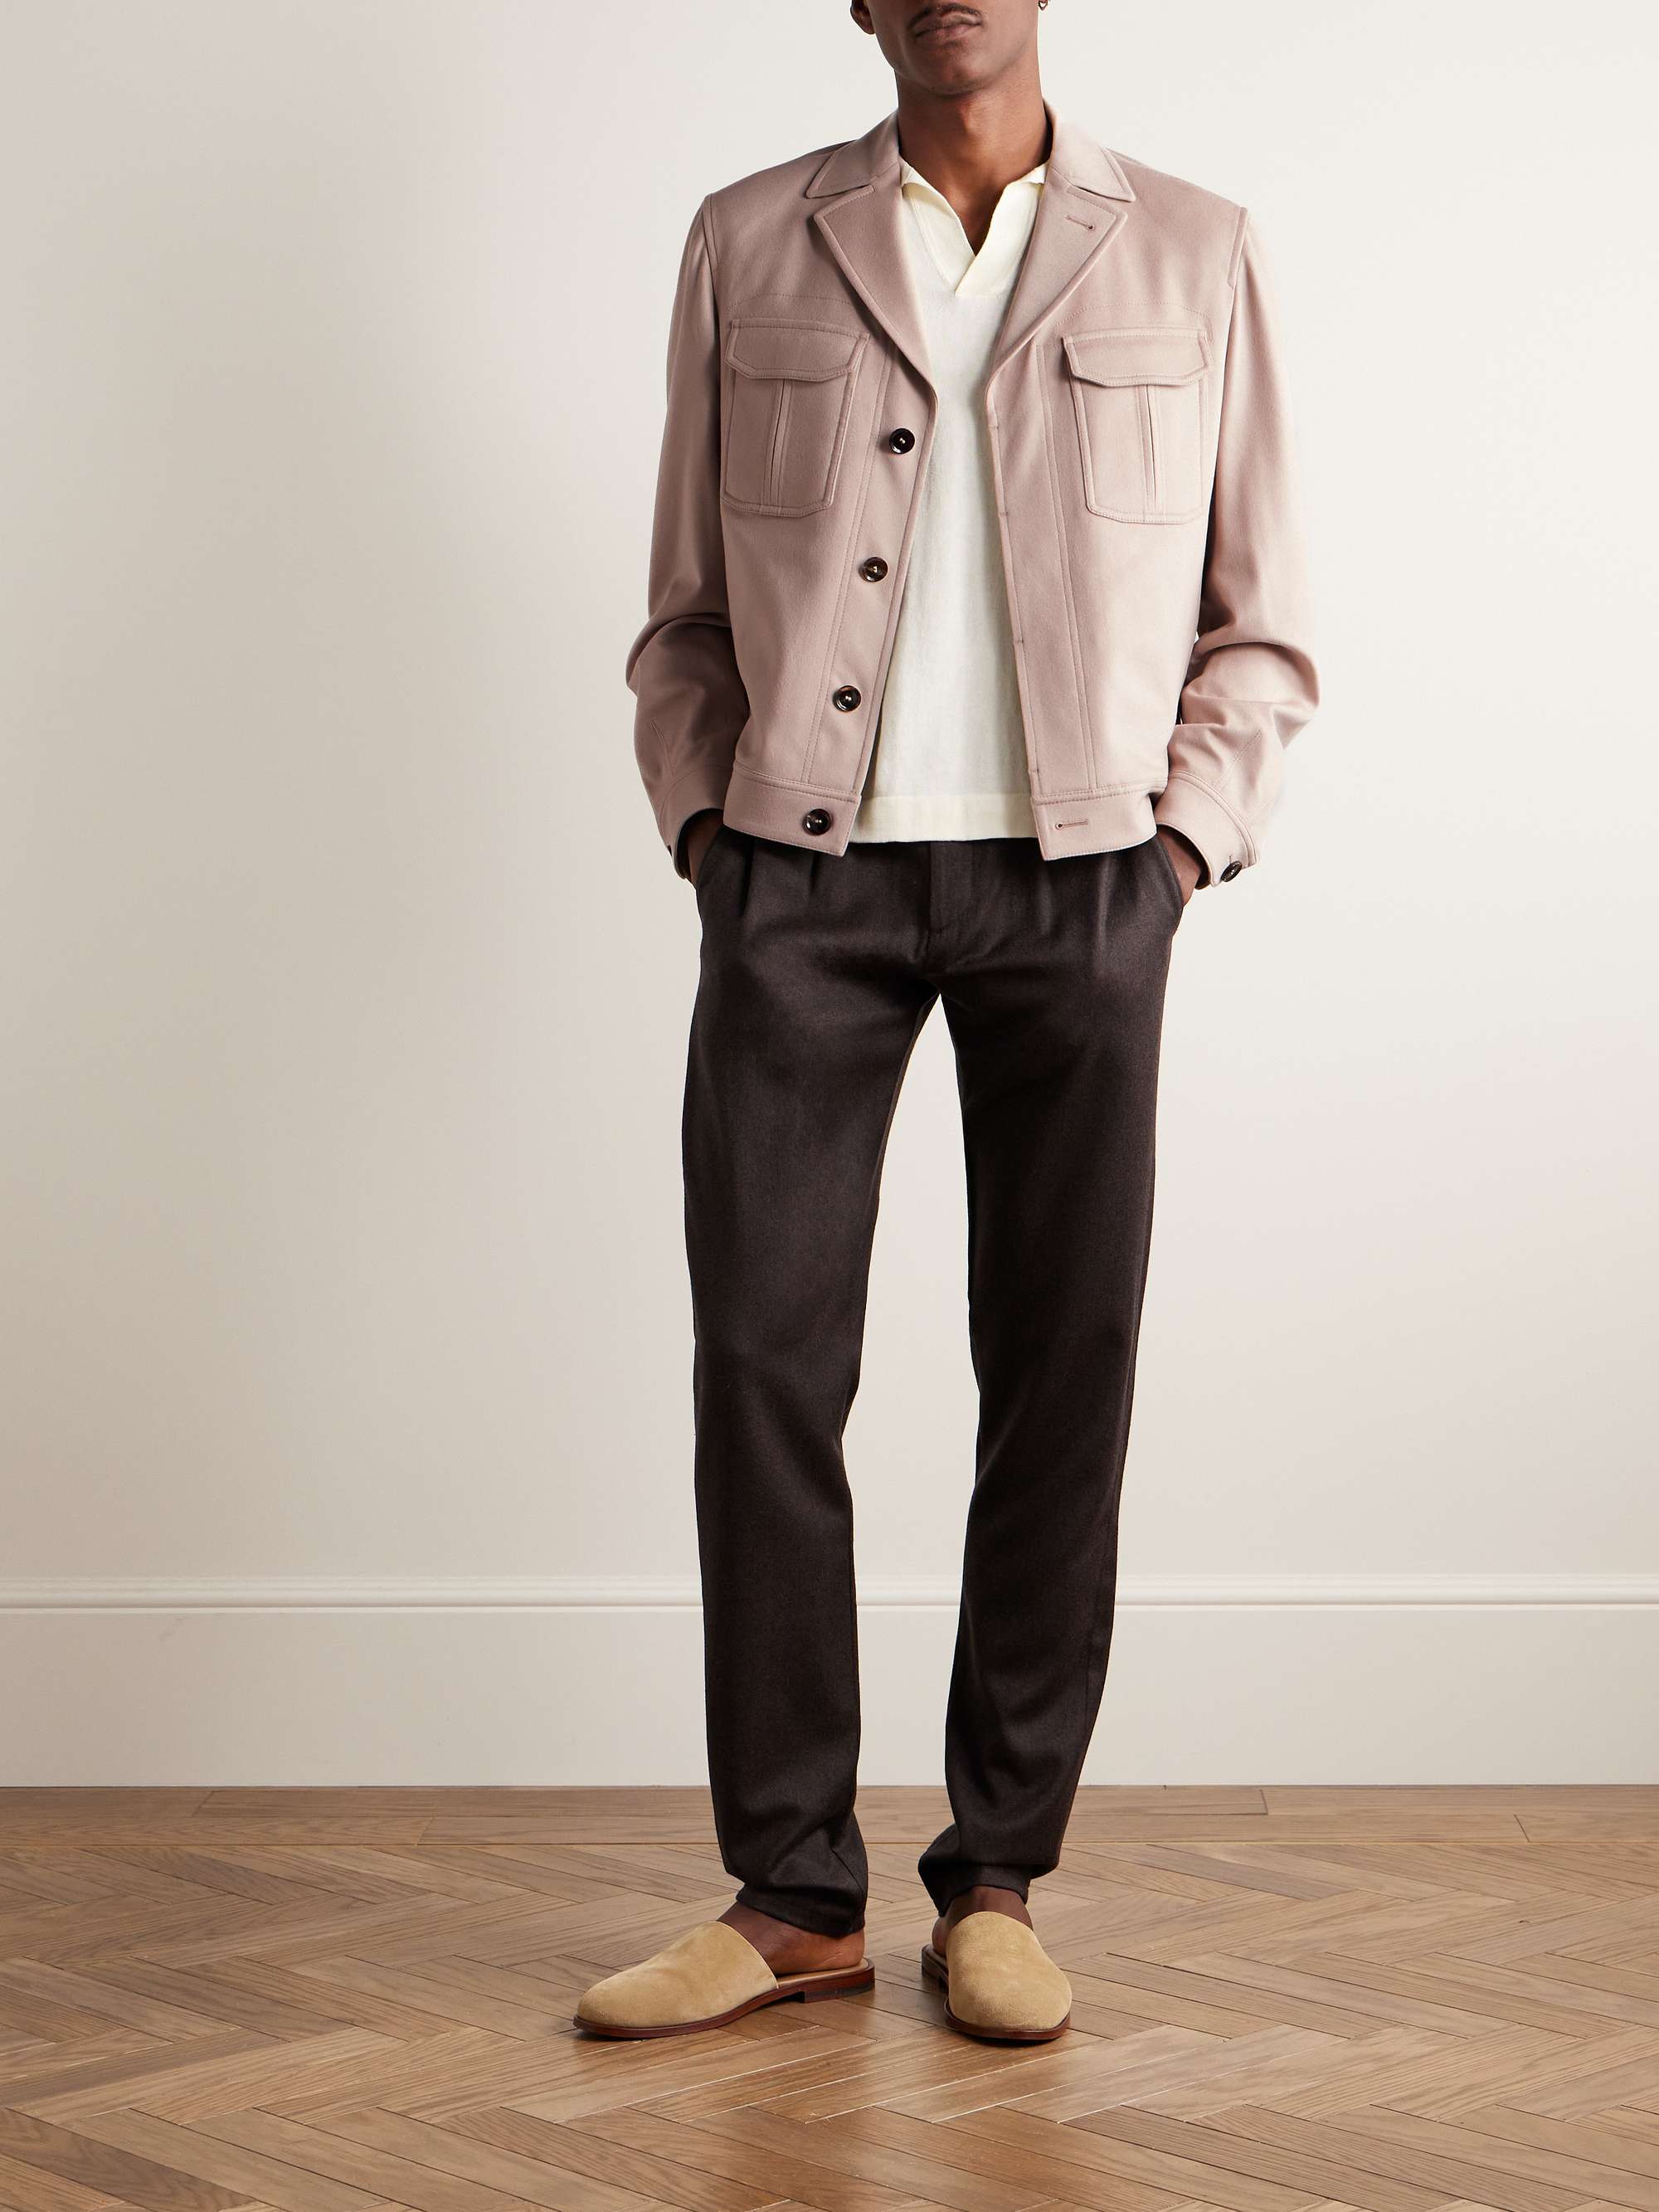 Sandro Spring 2020 Menswear Collection